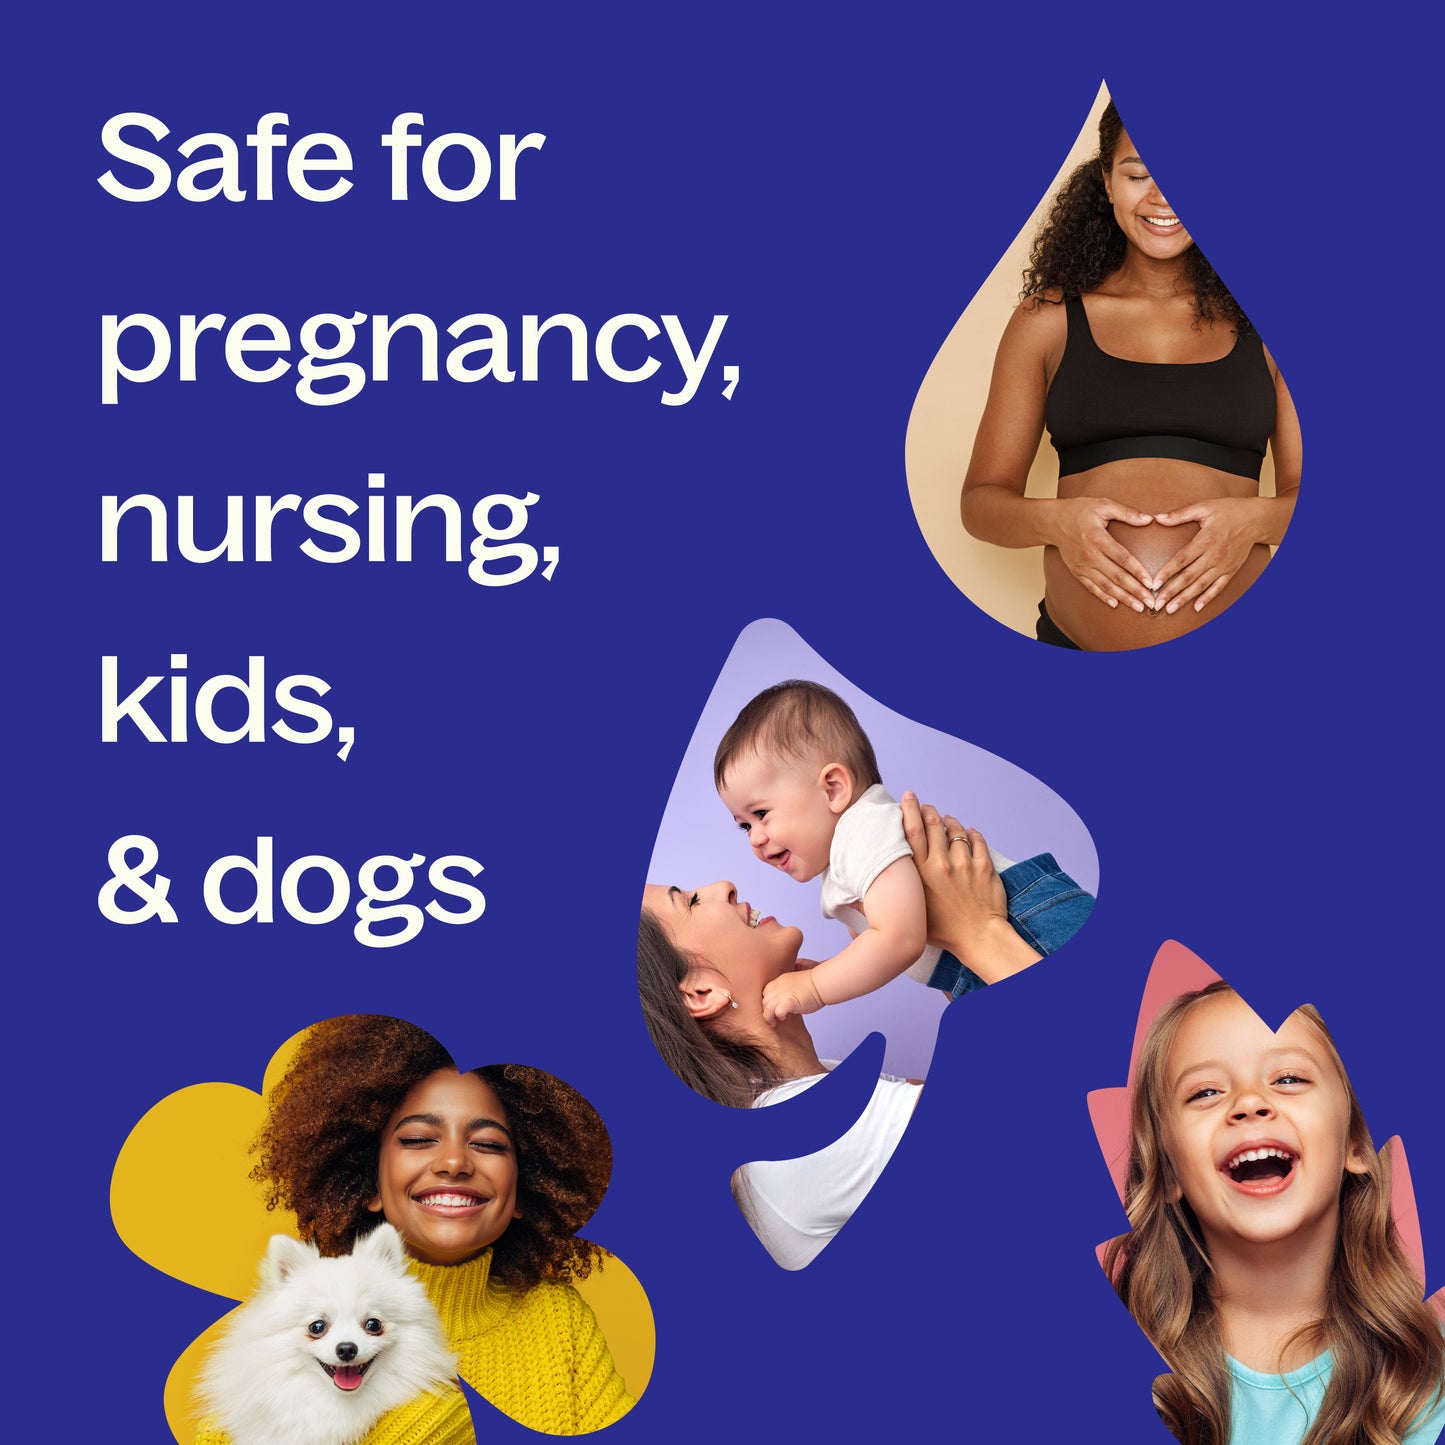 safe for pregnancy, nursing, kids & dogs